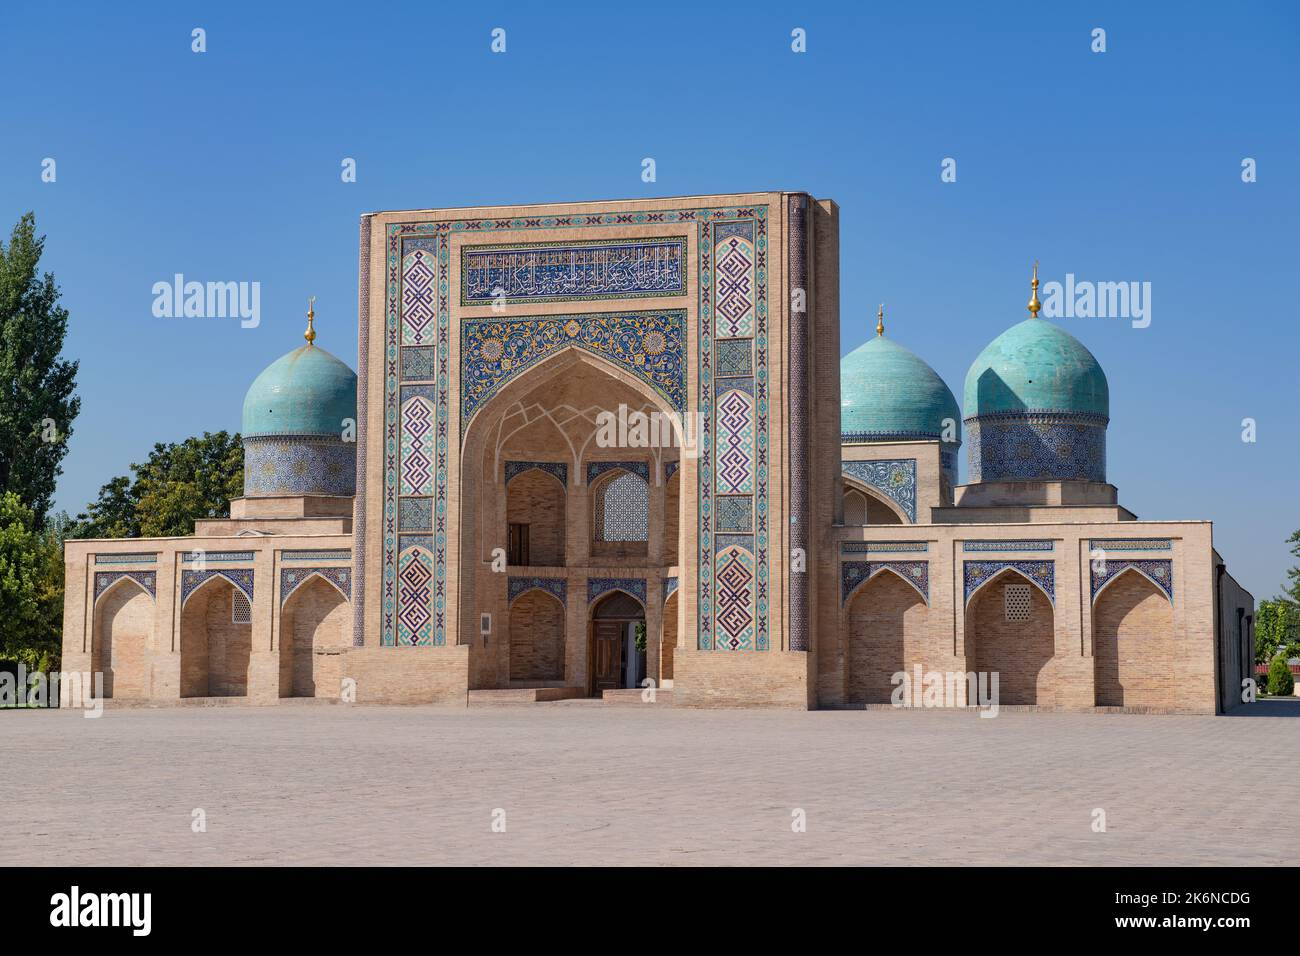 La madrasah médiévale de Barak Khan par une journée ensoleillée. Tachkent, Ouzbékistan Banque D'Images